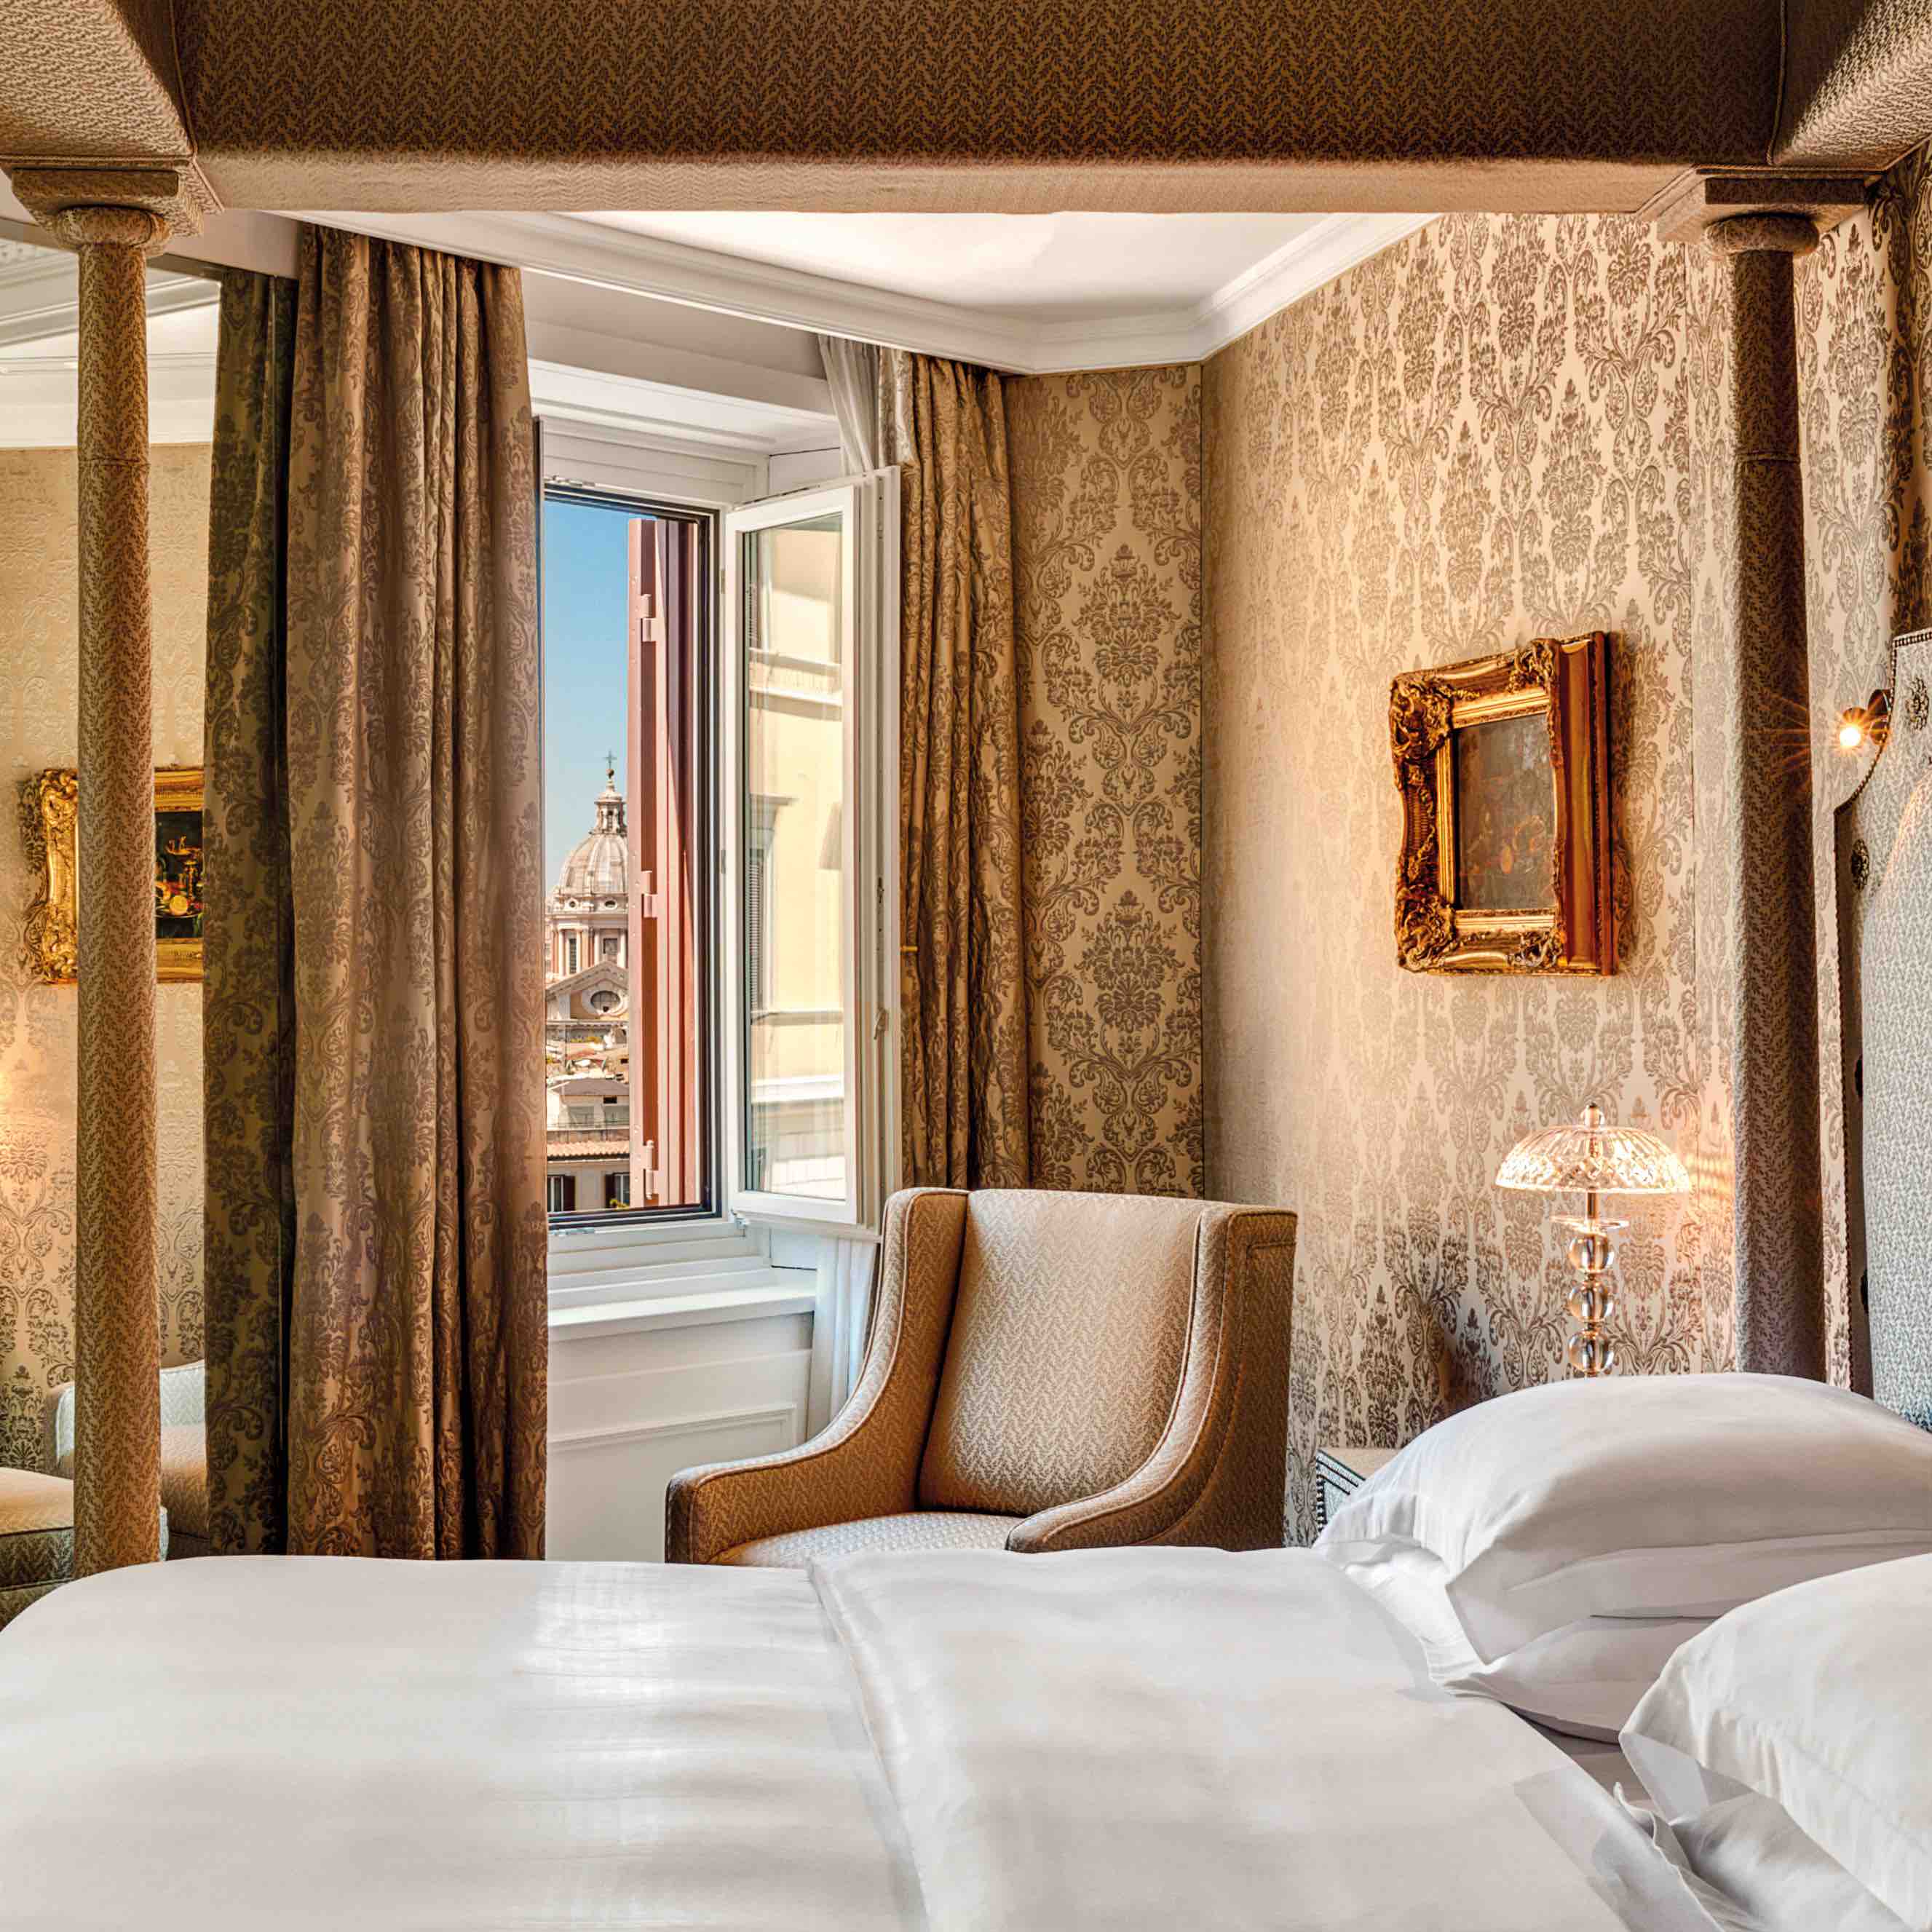 Gran Deluxe Suite Hassler Bedroom- Hassler Roma - credit Genivs Loci-min.jpeg